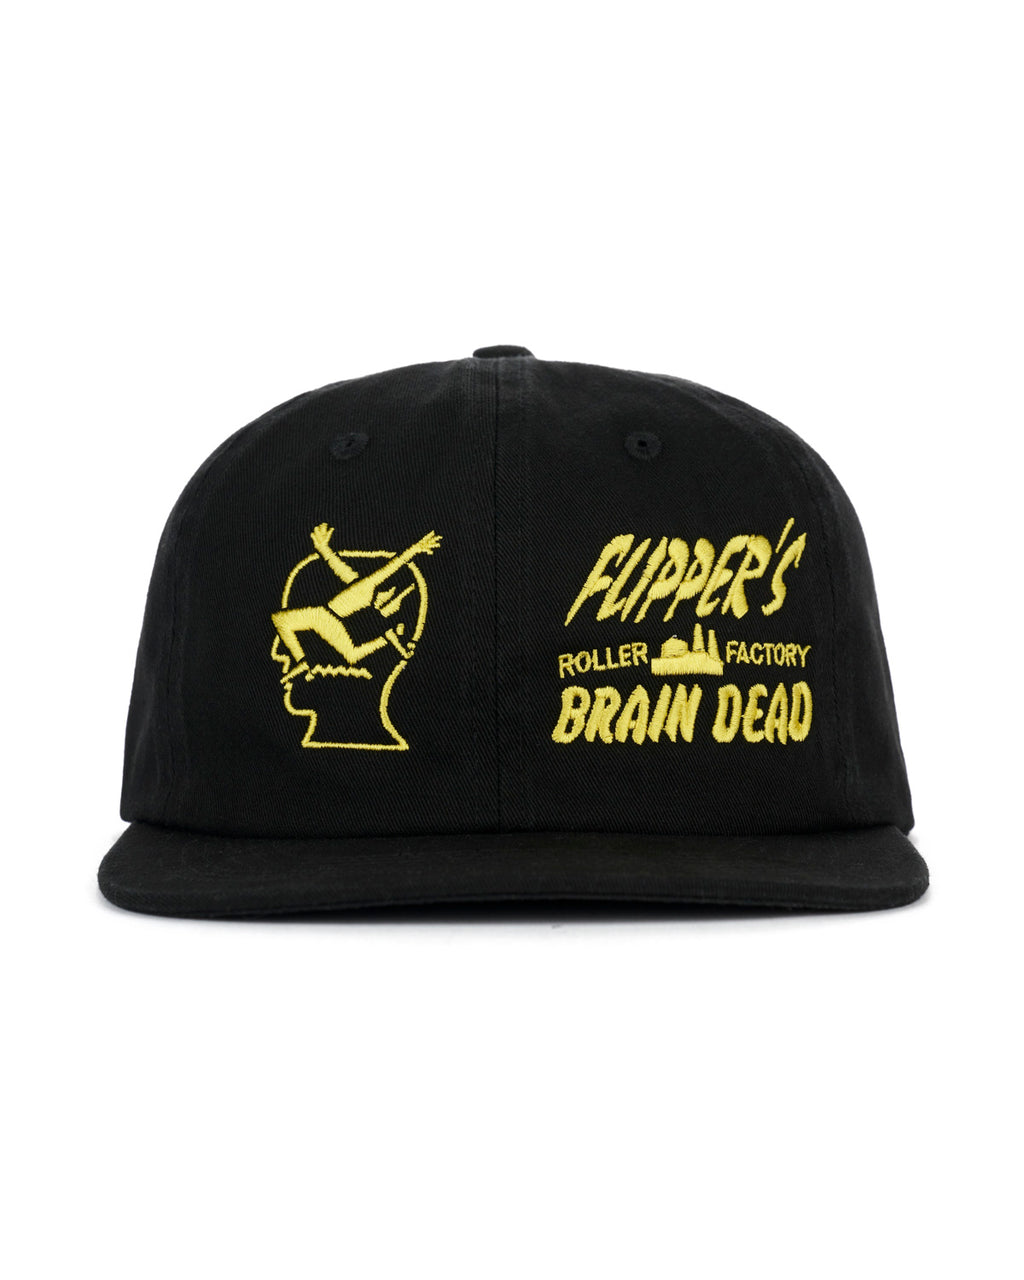 Brain Dead x Flippers Factory Hat - Black